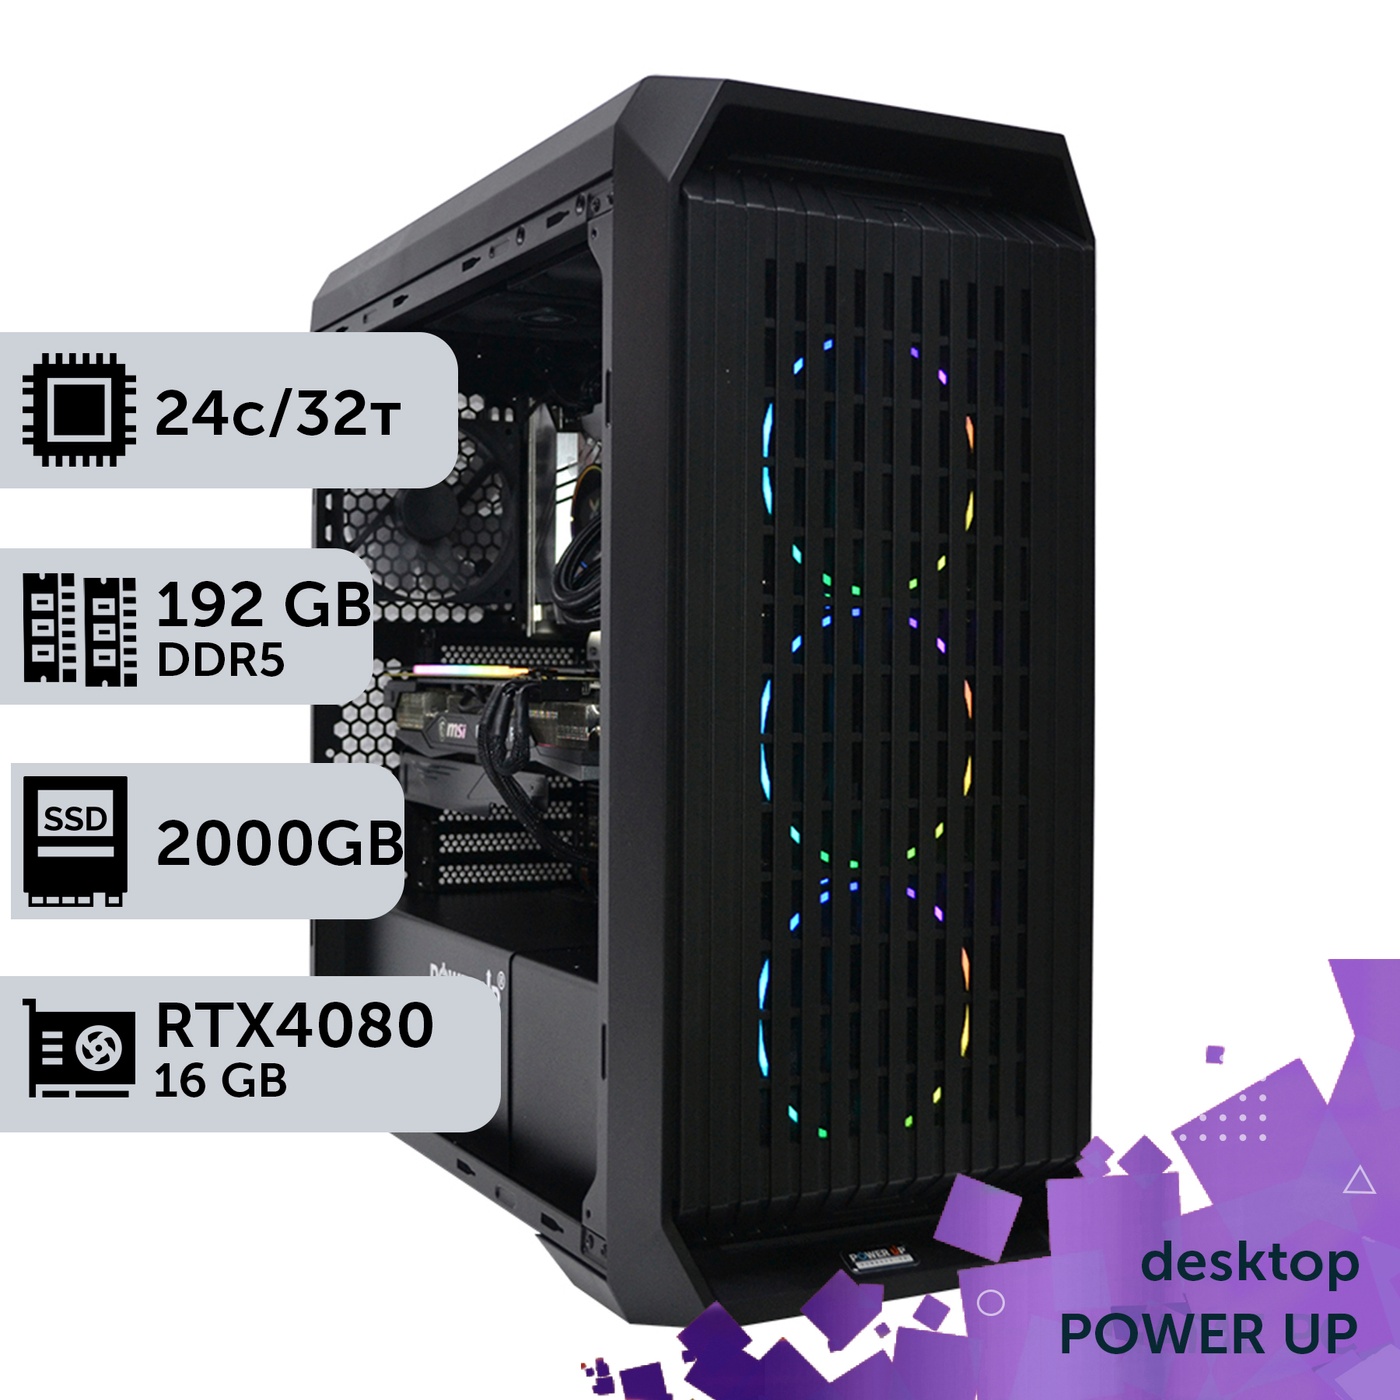 Робоча станція PowerUp Desktop #282 Core i9 13900K/192 GB/SSD 2TB/GeForce RTX 4080 16GB